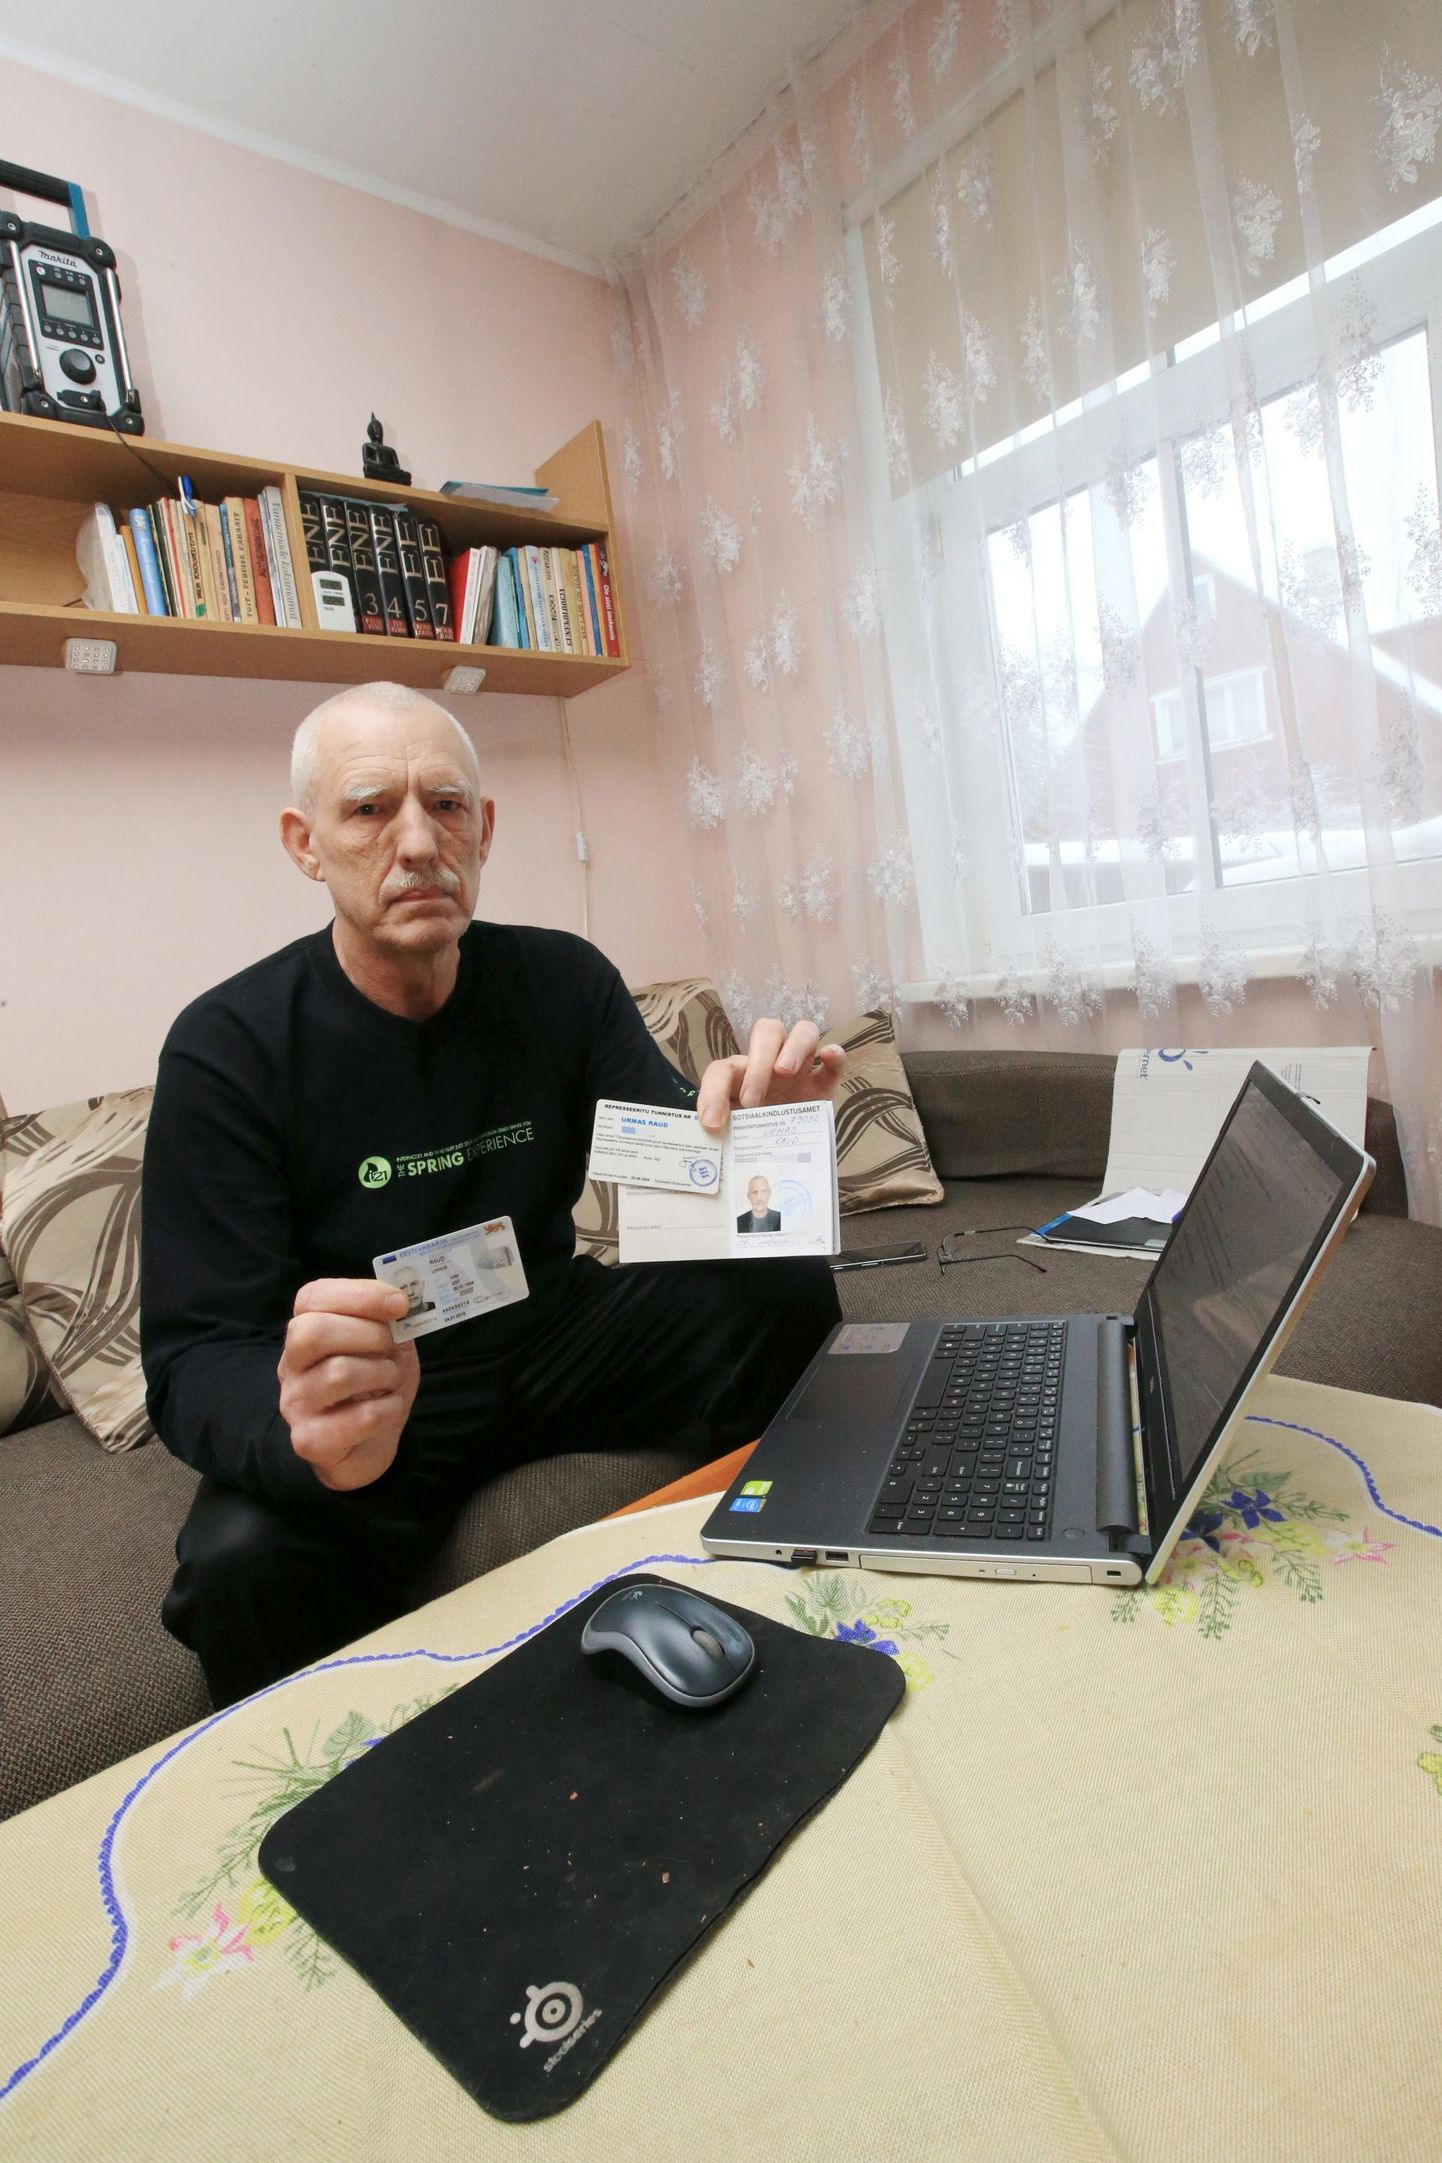 Tšornobõlis oldud aja eest varem pensionile jäänud Urmas Raual pole kasu pensionitunnistusest ega represseeritu kaardist – PPA silmis pole Raud pensionär.